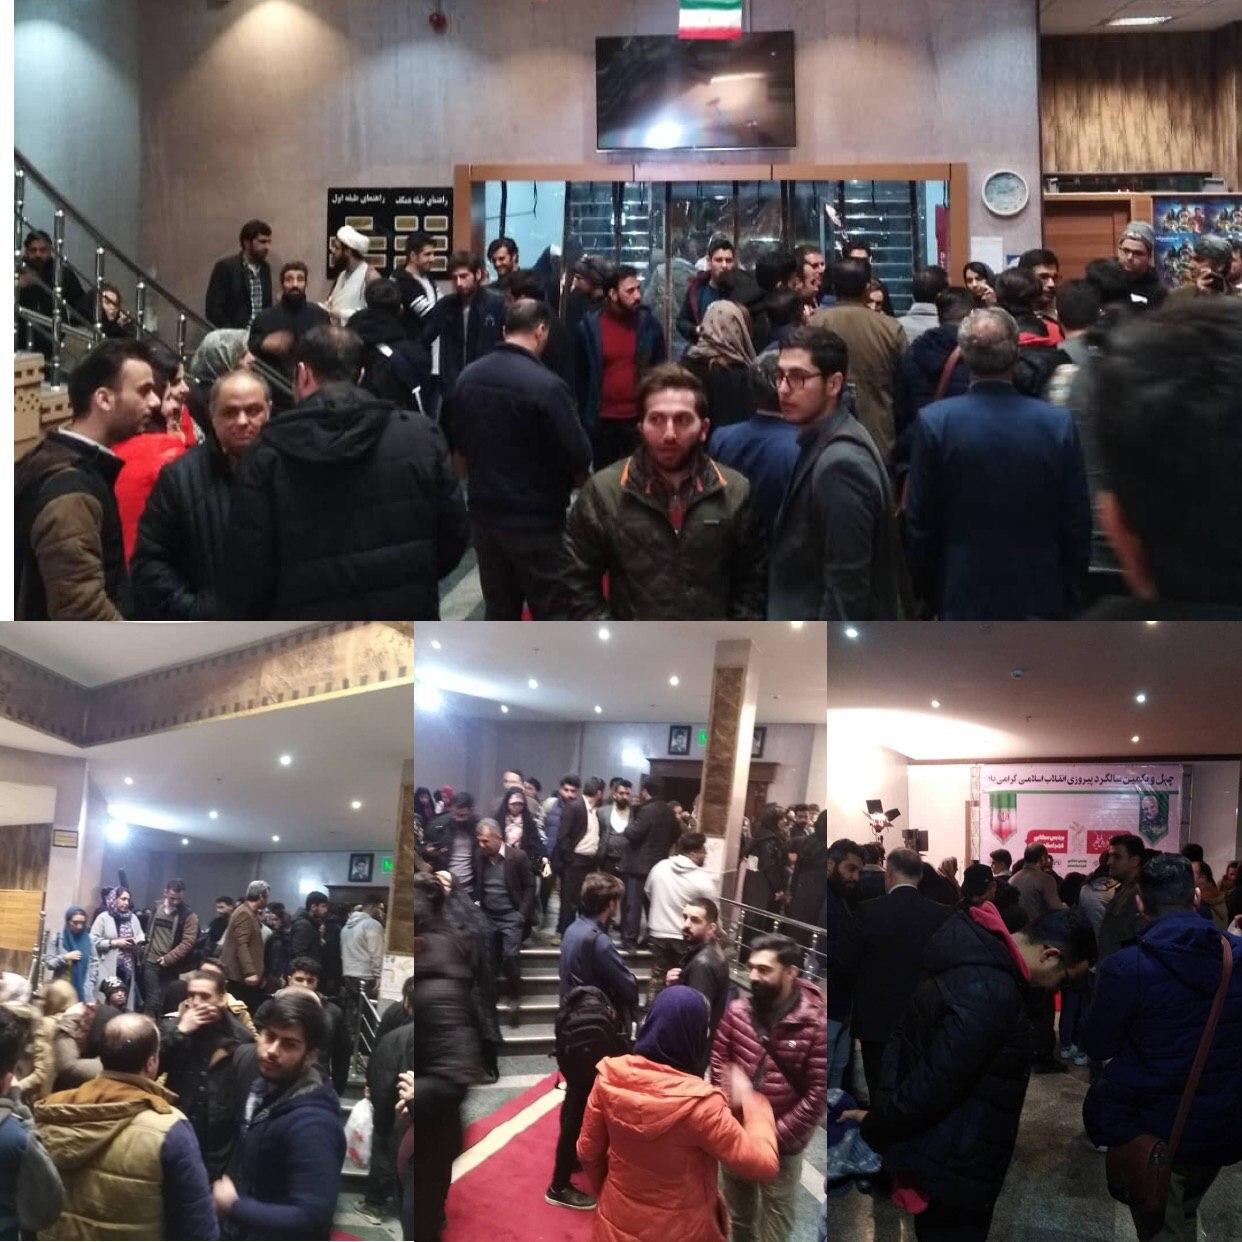 ????چهار فریم از استقبال پر شور شهروندان اسلامشهری از اکران #خروج در سینما فجر اسلامشهر